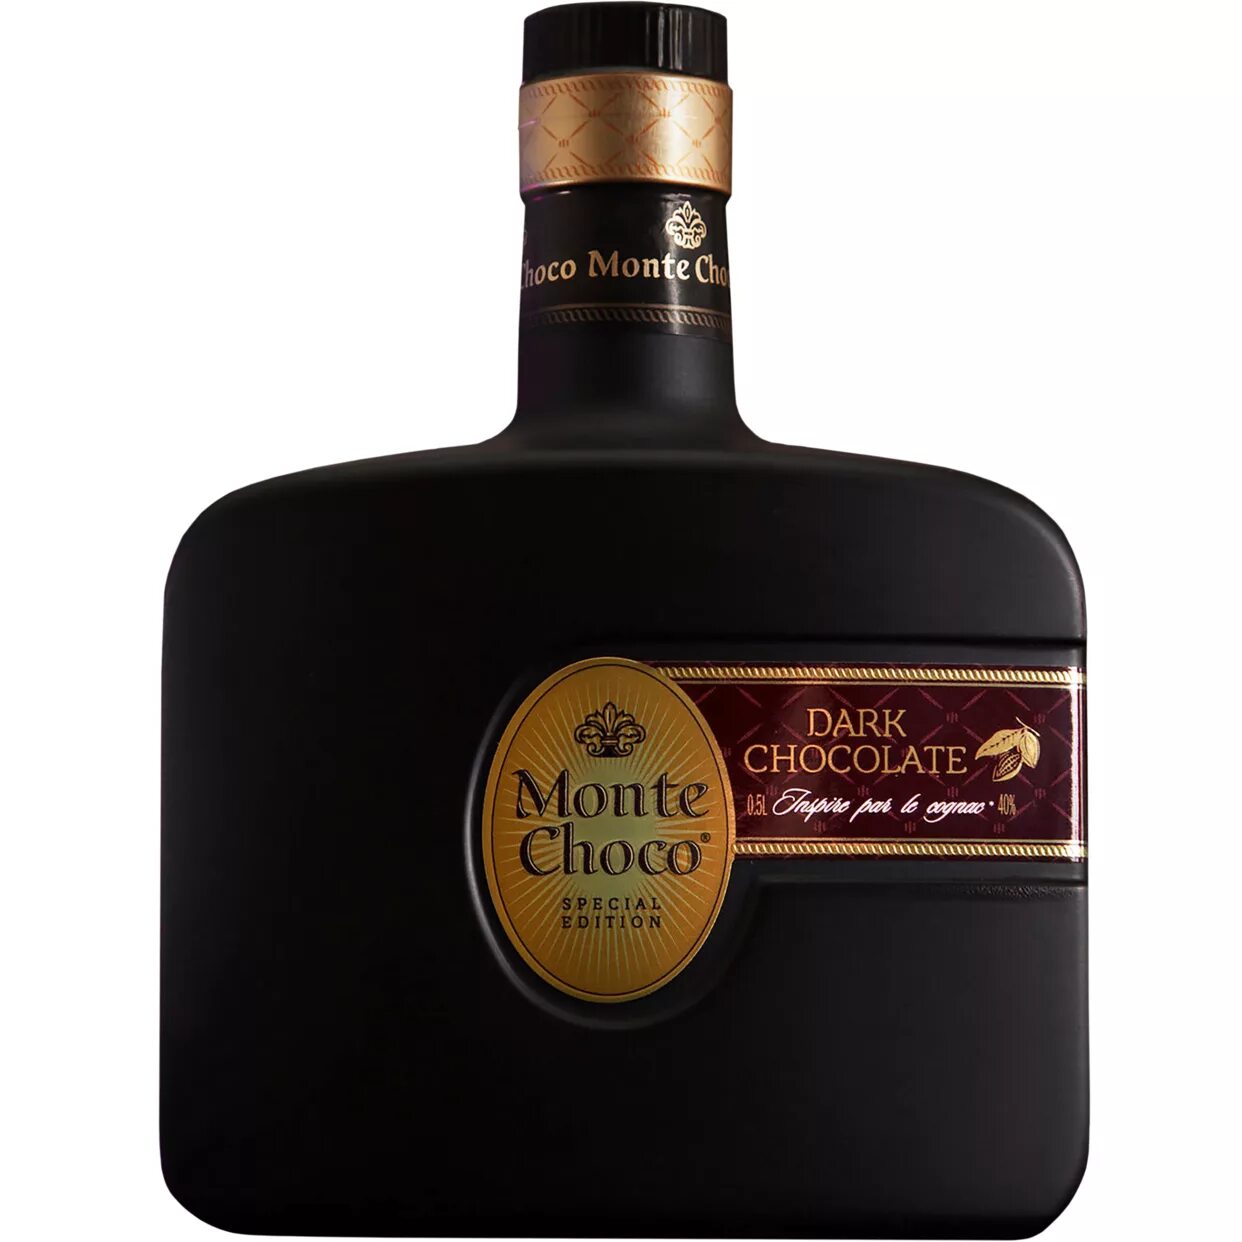 Коктейль монте шоко. Монте Чоко дарк чоколате. "Monte Choco" Dark Chocolate, 0.5 л. Кокт.Monte.Choco Dark Chocolate 40% 0.5. Коньяк Monte Choco Dark Chocolate.